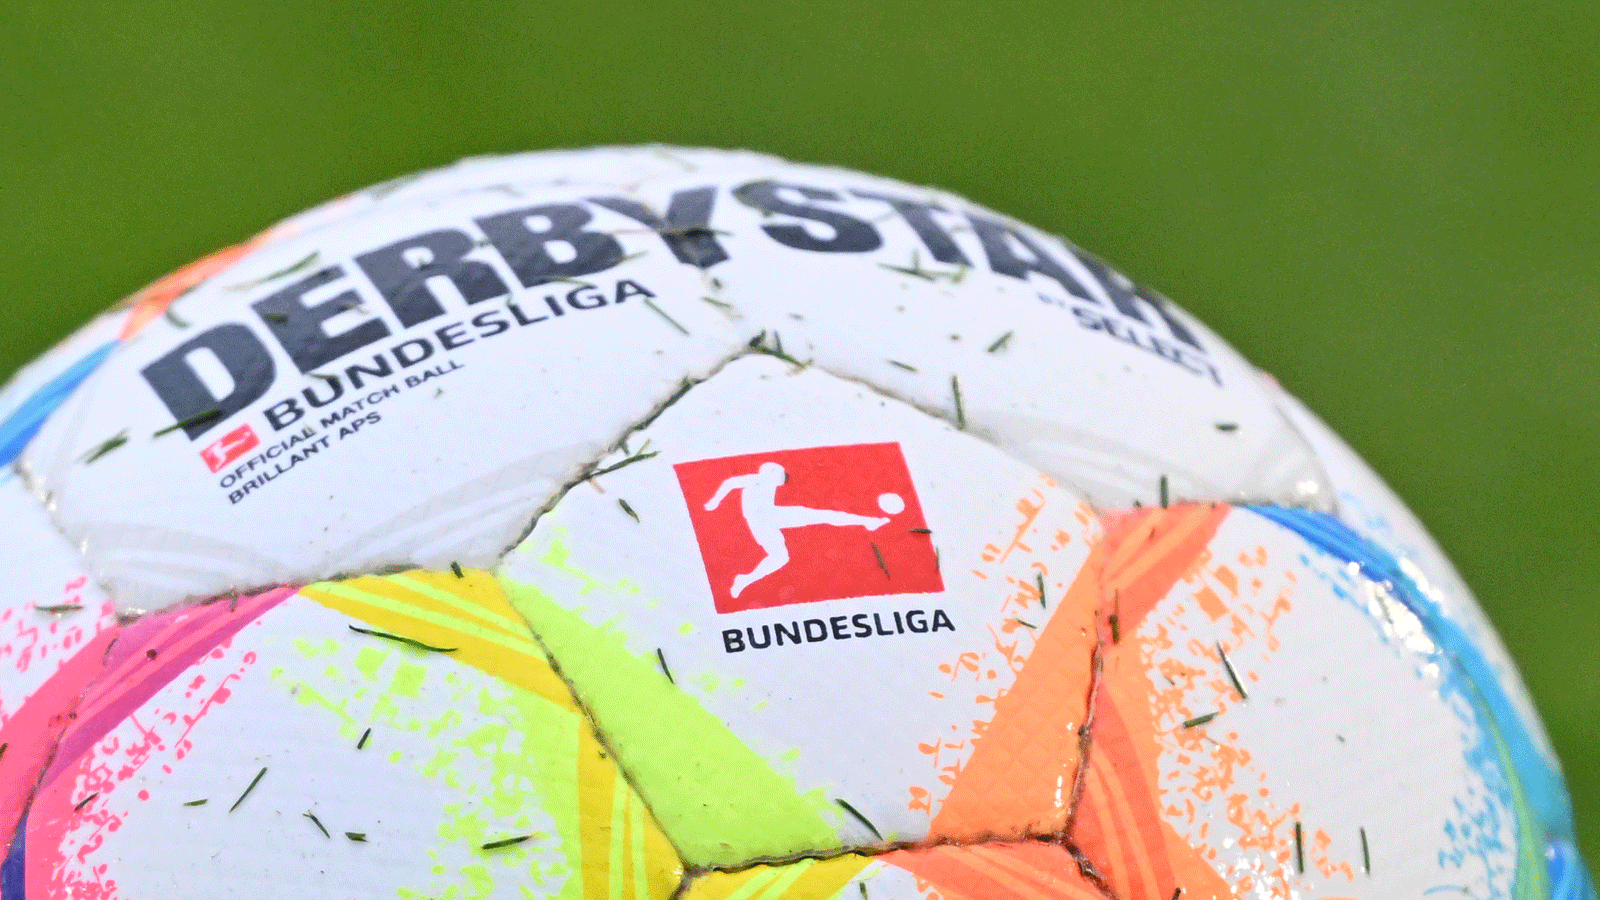 Bundesliga, Logo, Ball